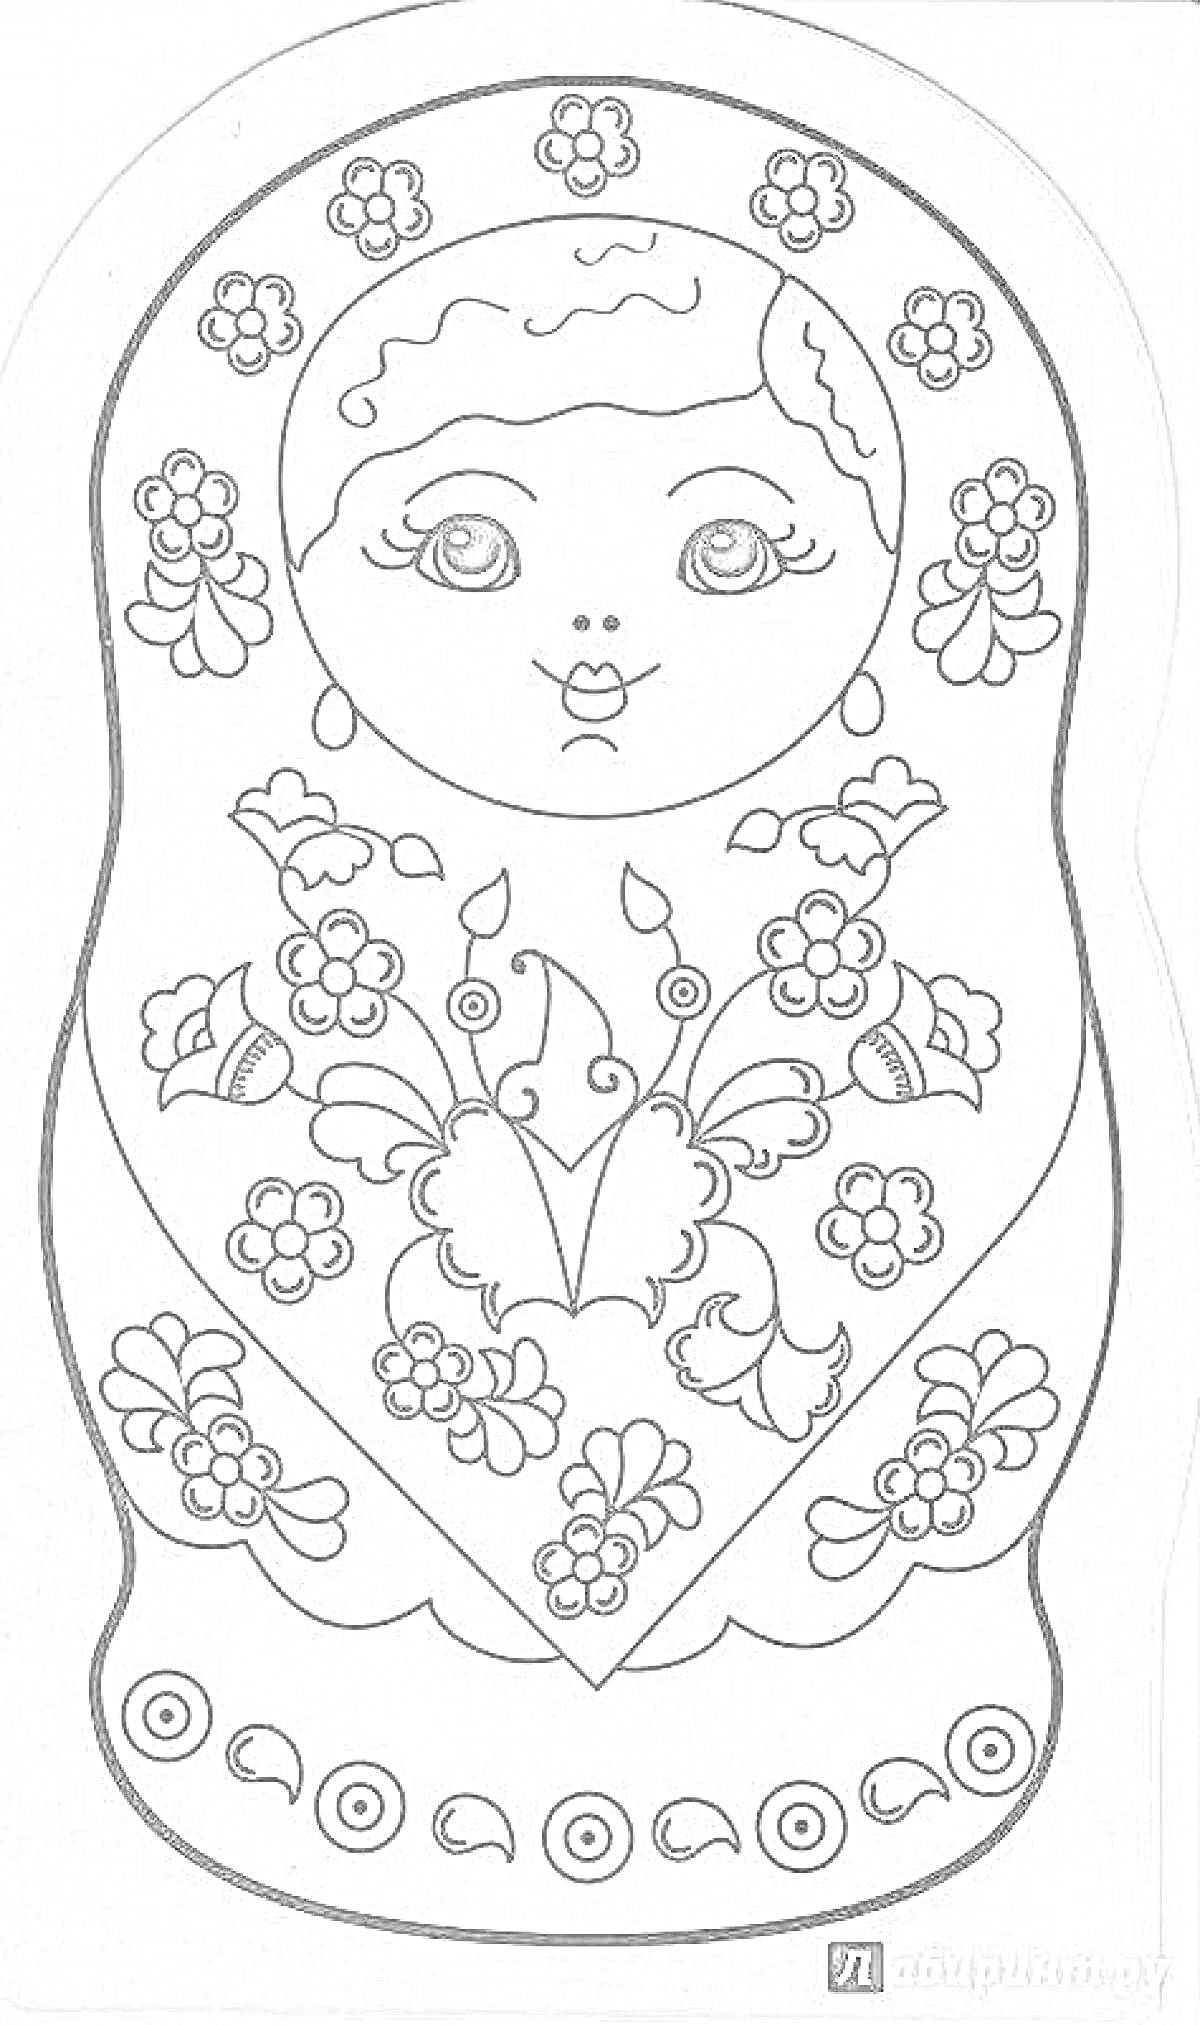 Раскраска Матрешка с цветочным узором в стиле городецкой росписи